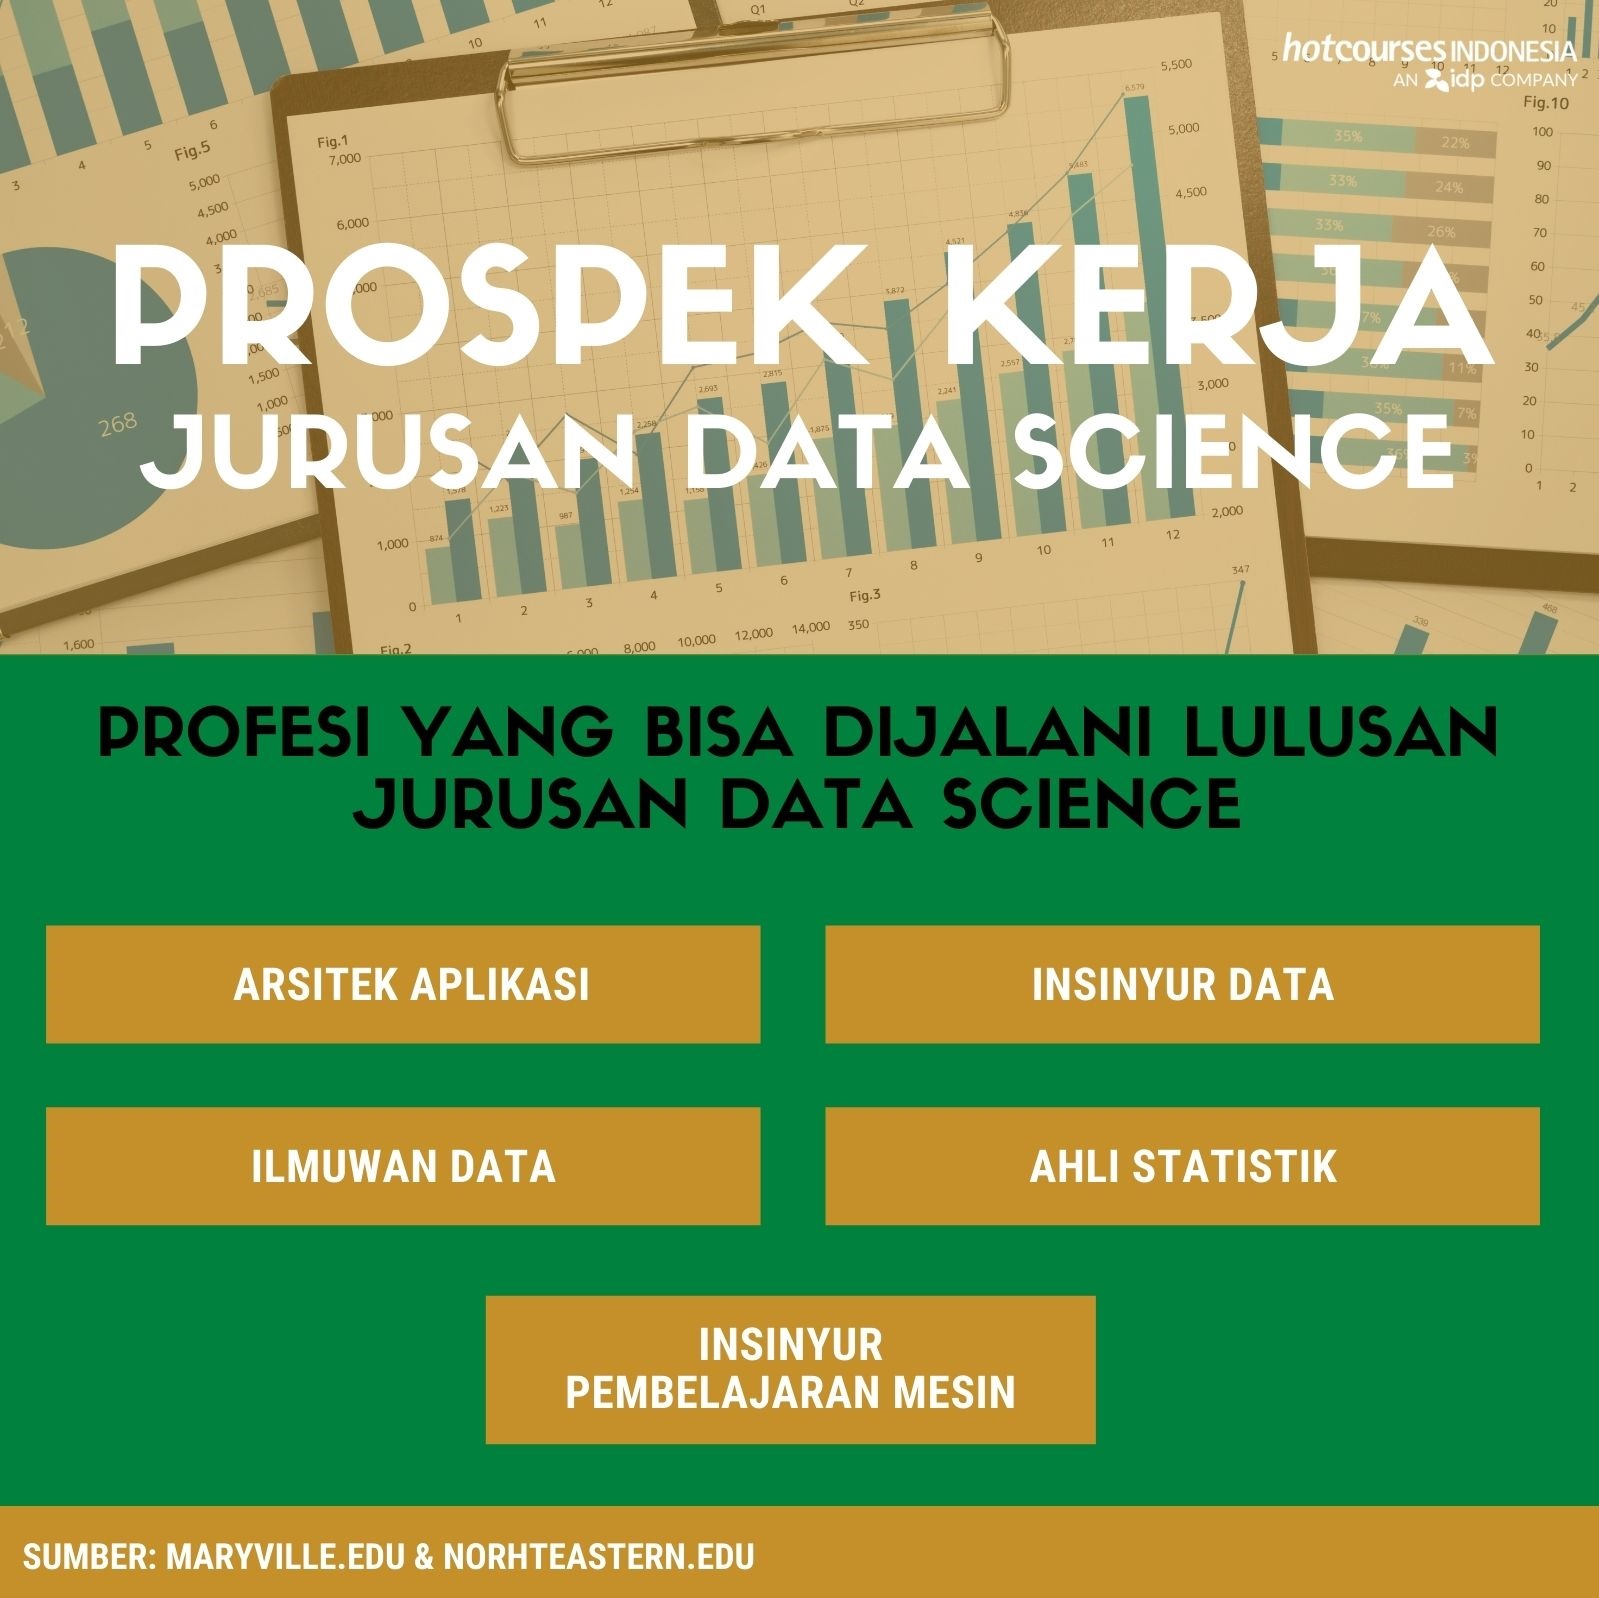 Mengenal Jurusan Data Science